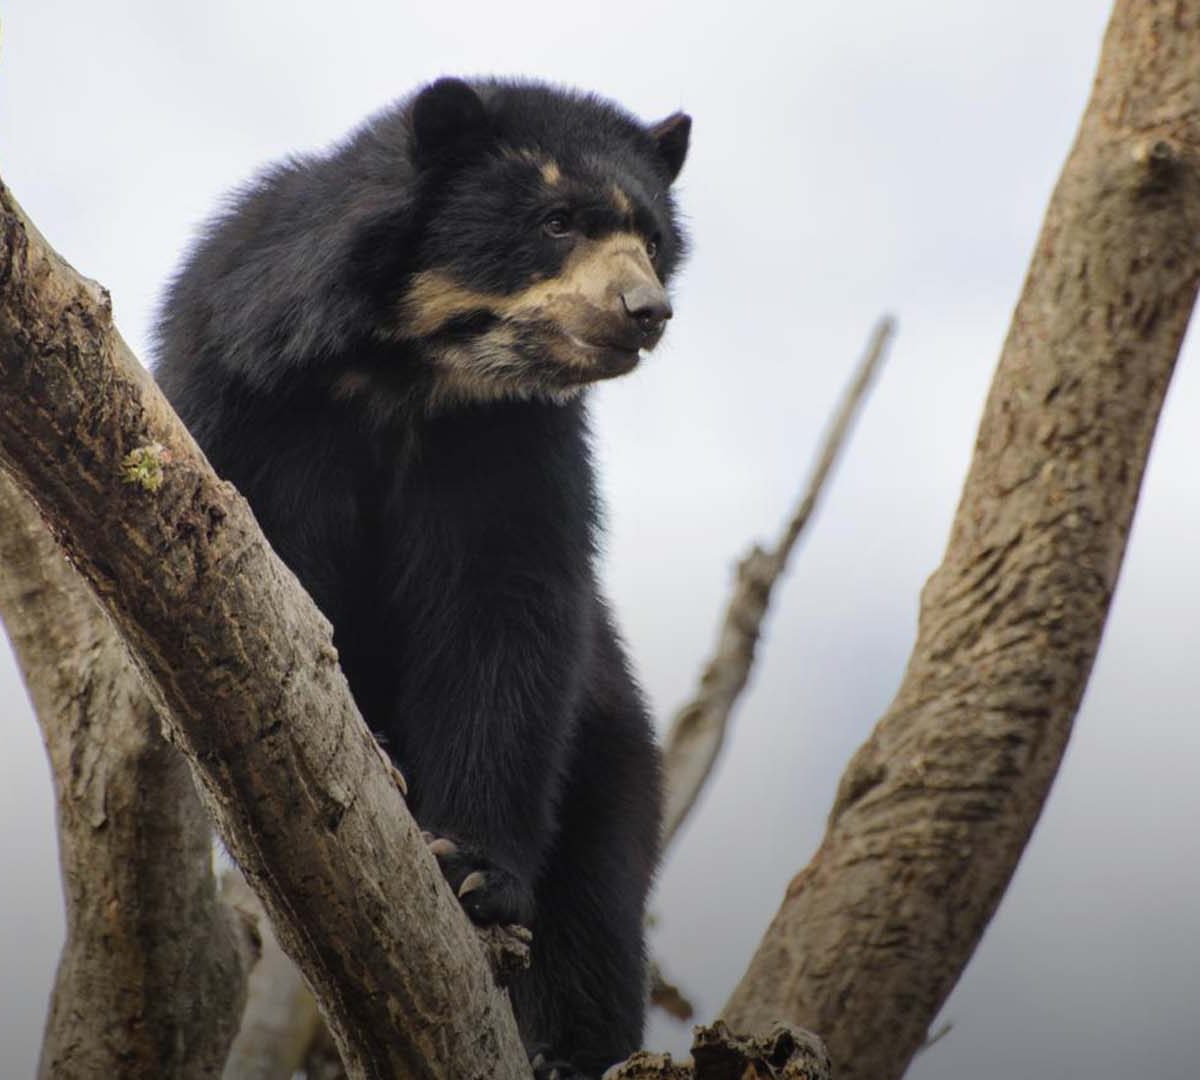 Liberan a oso andino que estuvo dos años en cautiverio en Ecuador